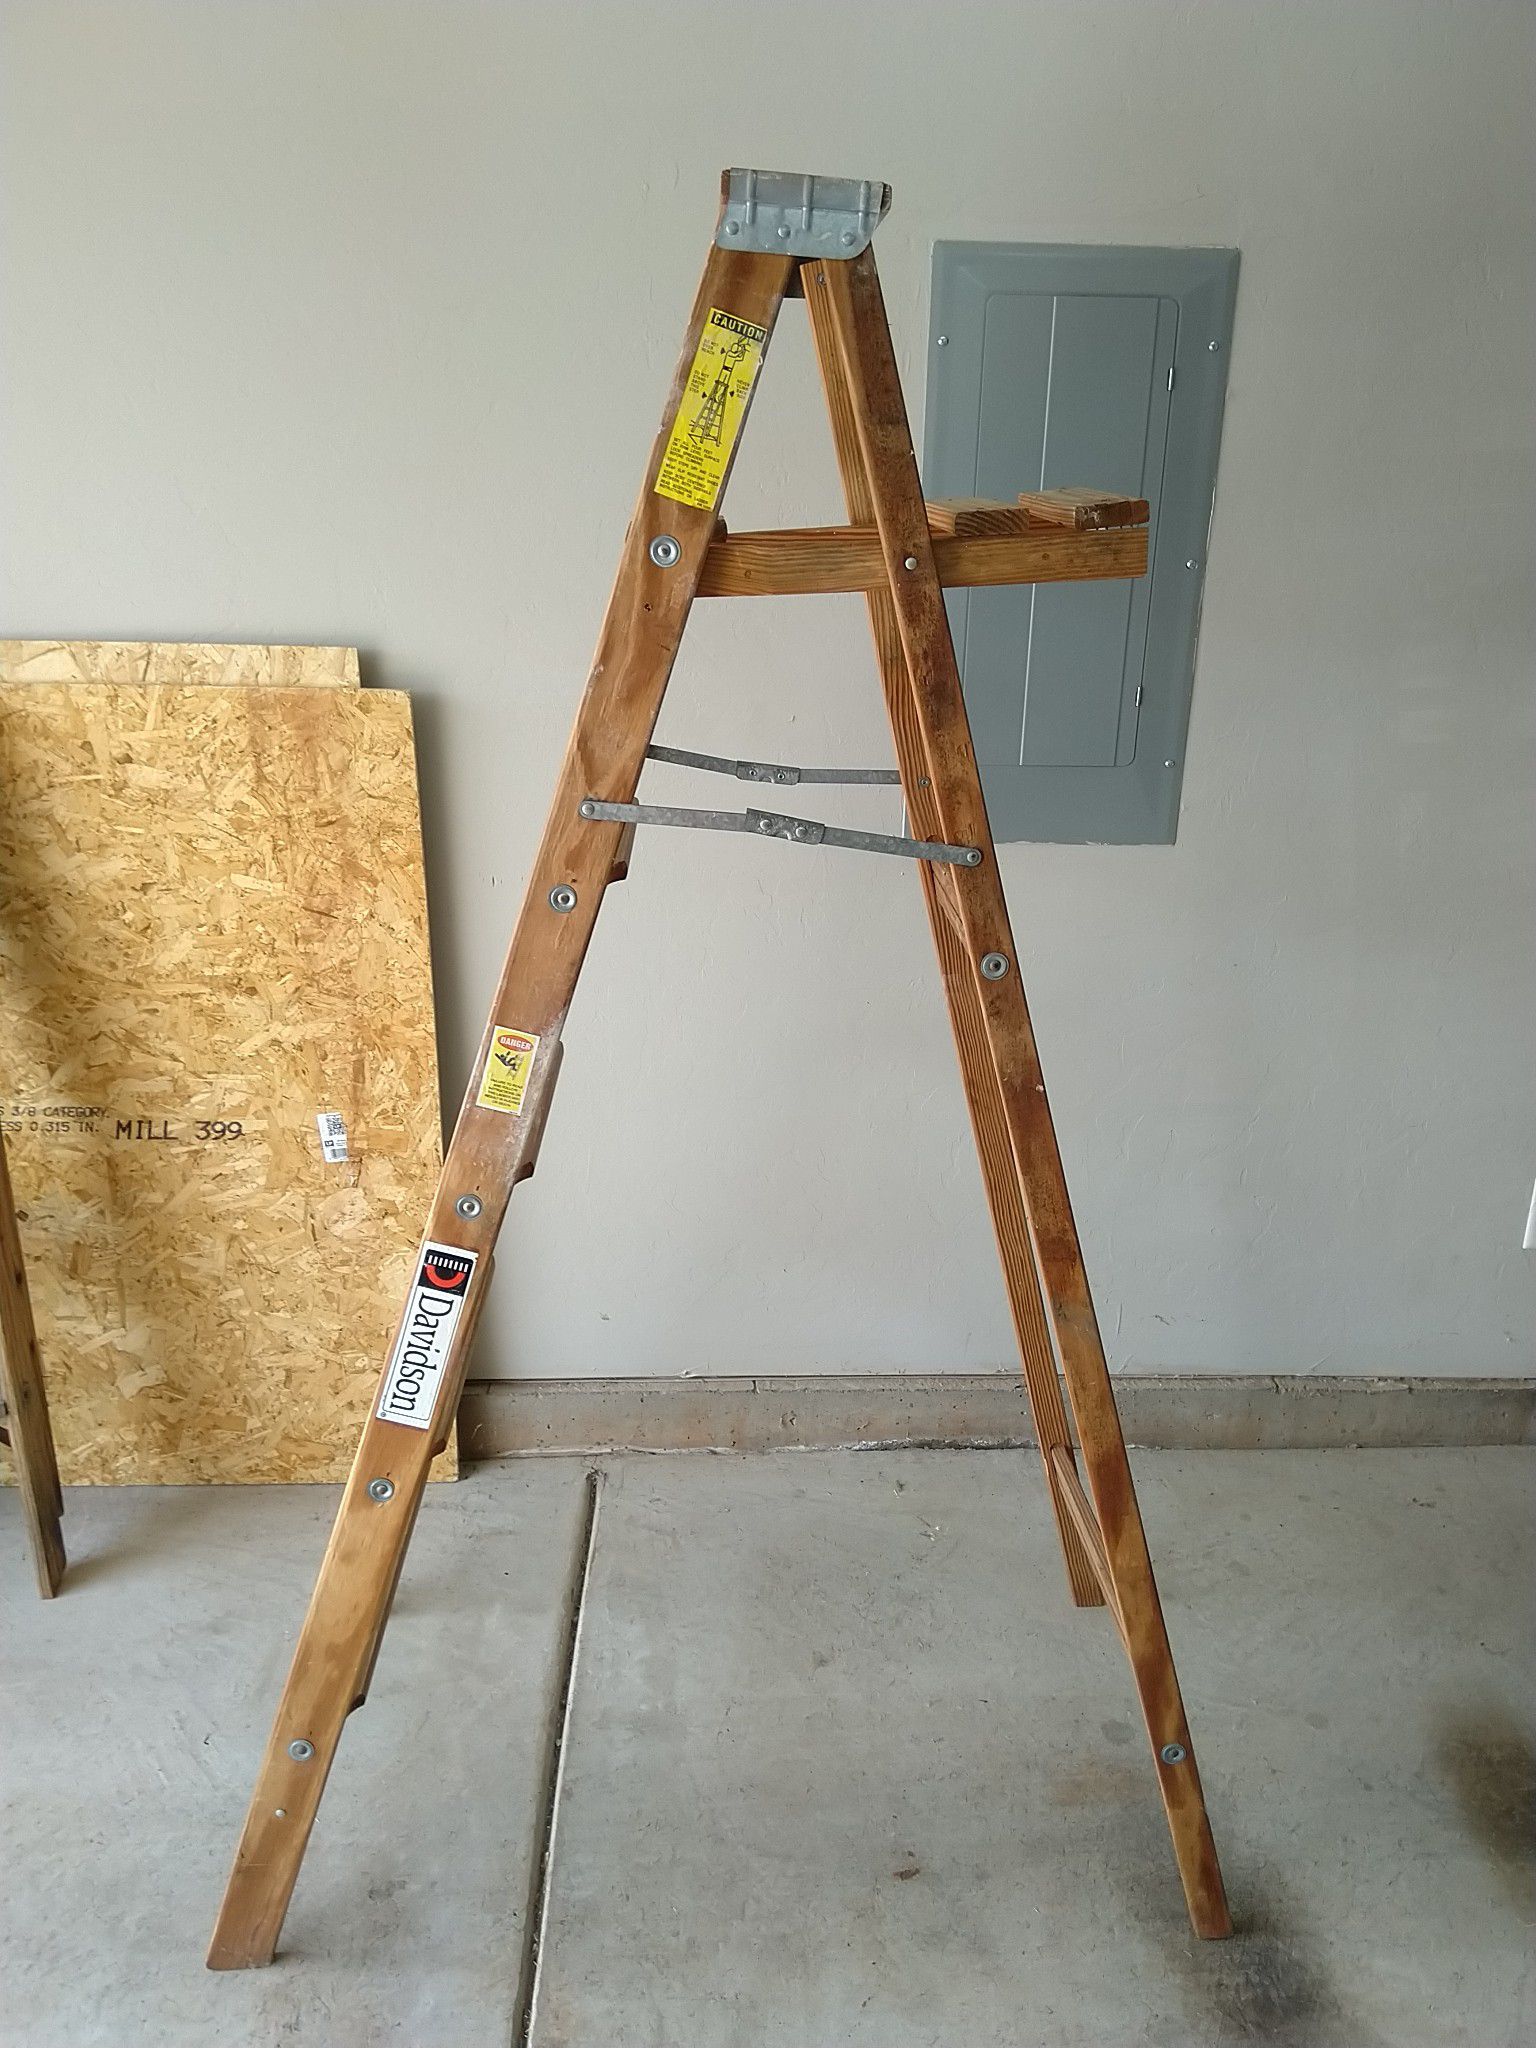 6 foot tall wooden ladder